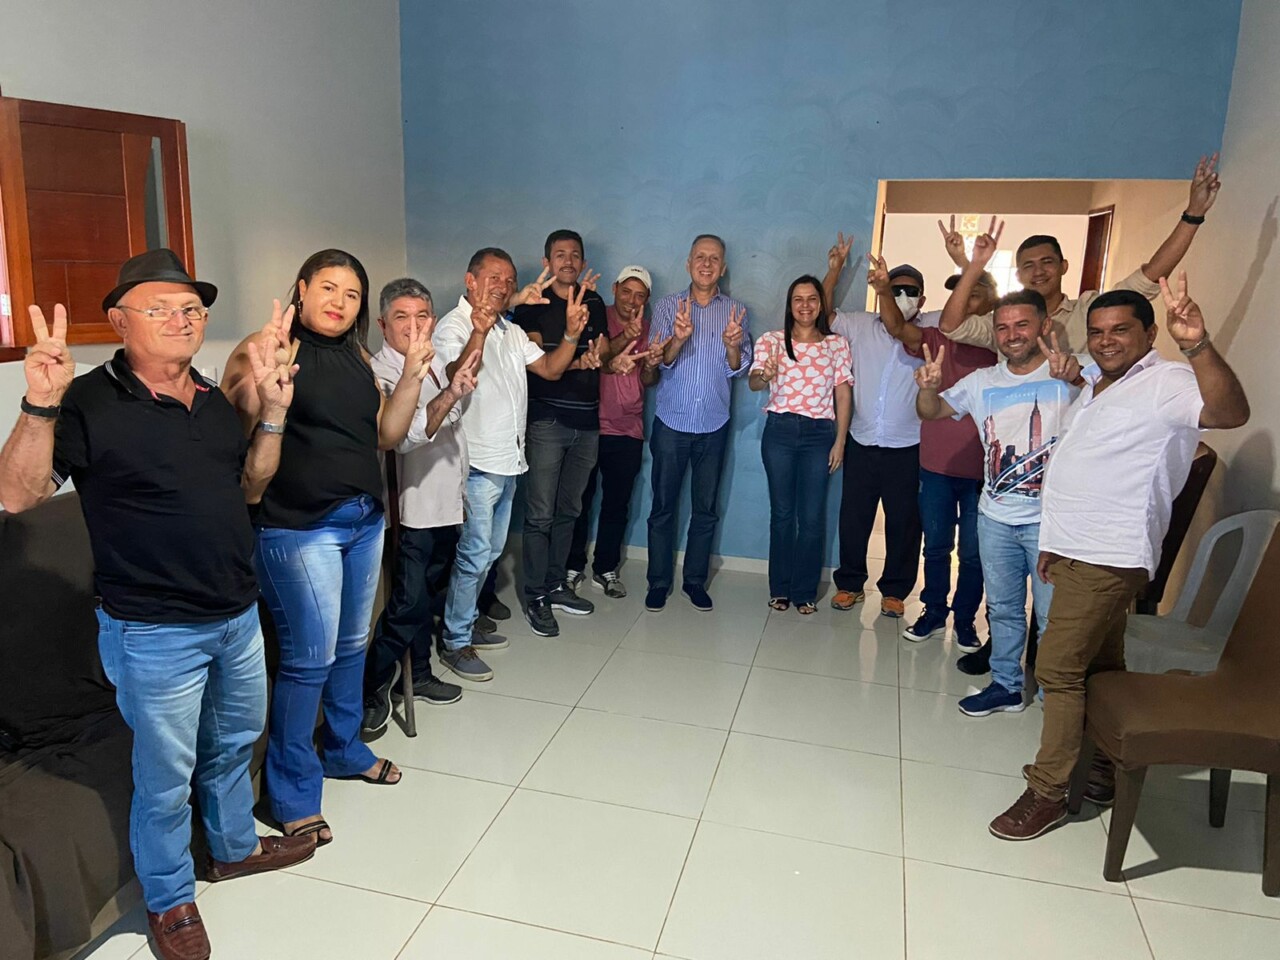 WhatsApp Image 2022 07 10 at 14.24.33 - Prefeito de Tacima declara apoio à reeleição de Aguinaldo Ribeiro e prefeita de Damião reforça parceria